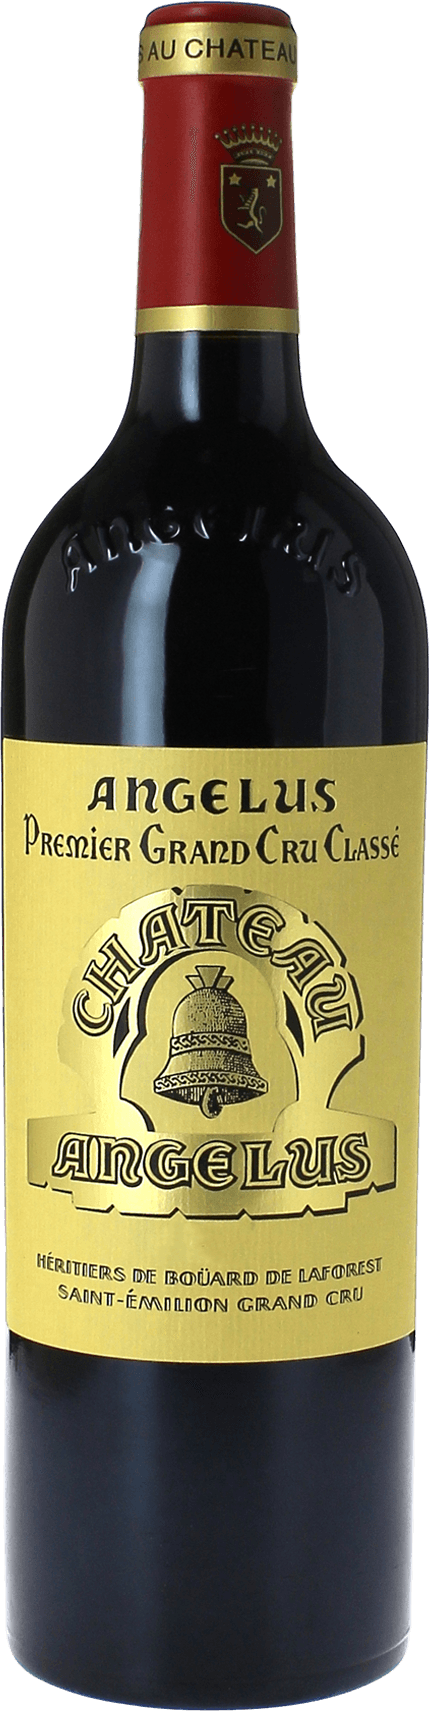 Angelus 1995 1er Grand cru B class Saint-Emilion, Bordeaux rouge